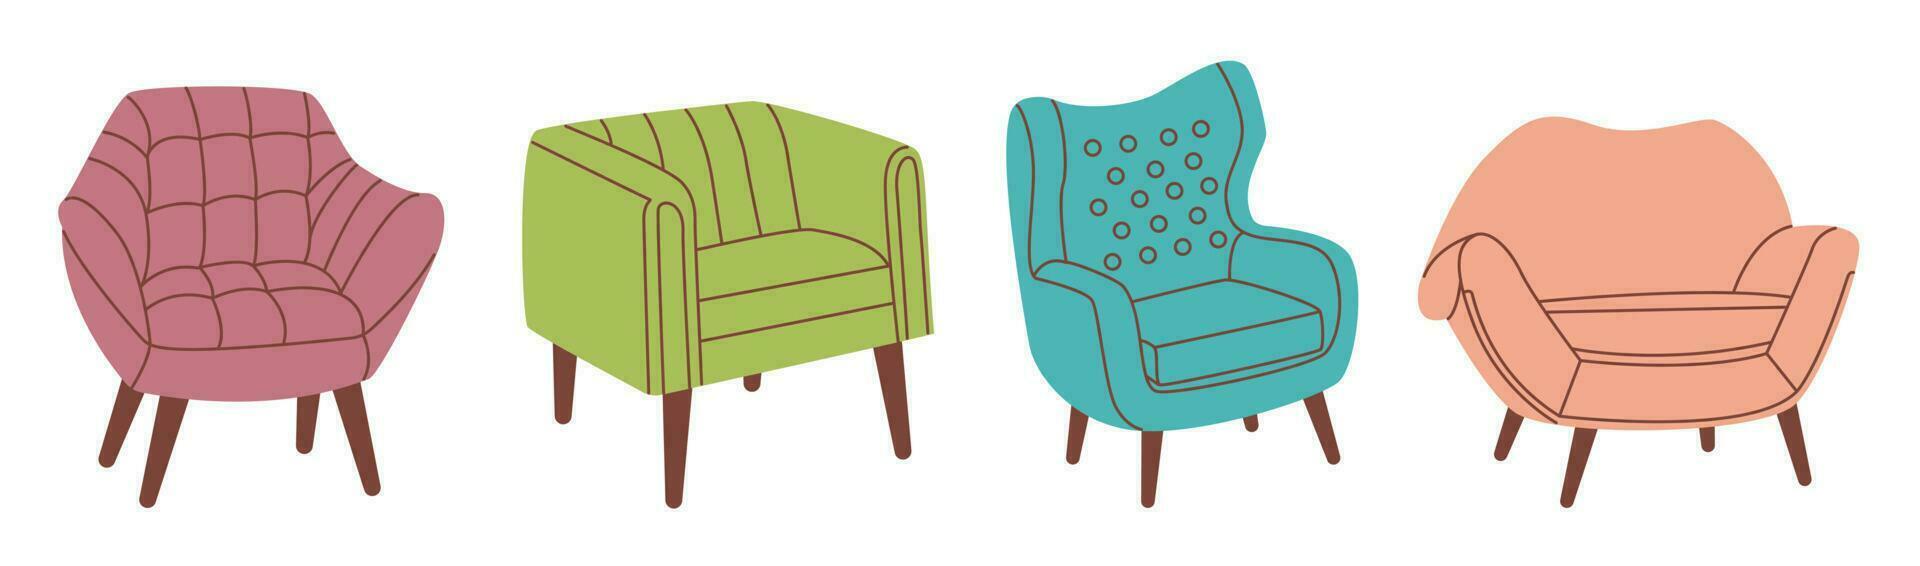 reeks van fauteuils in trendy, modern stijl. leven kamer en patio meubilair. vlak vector illustratie.